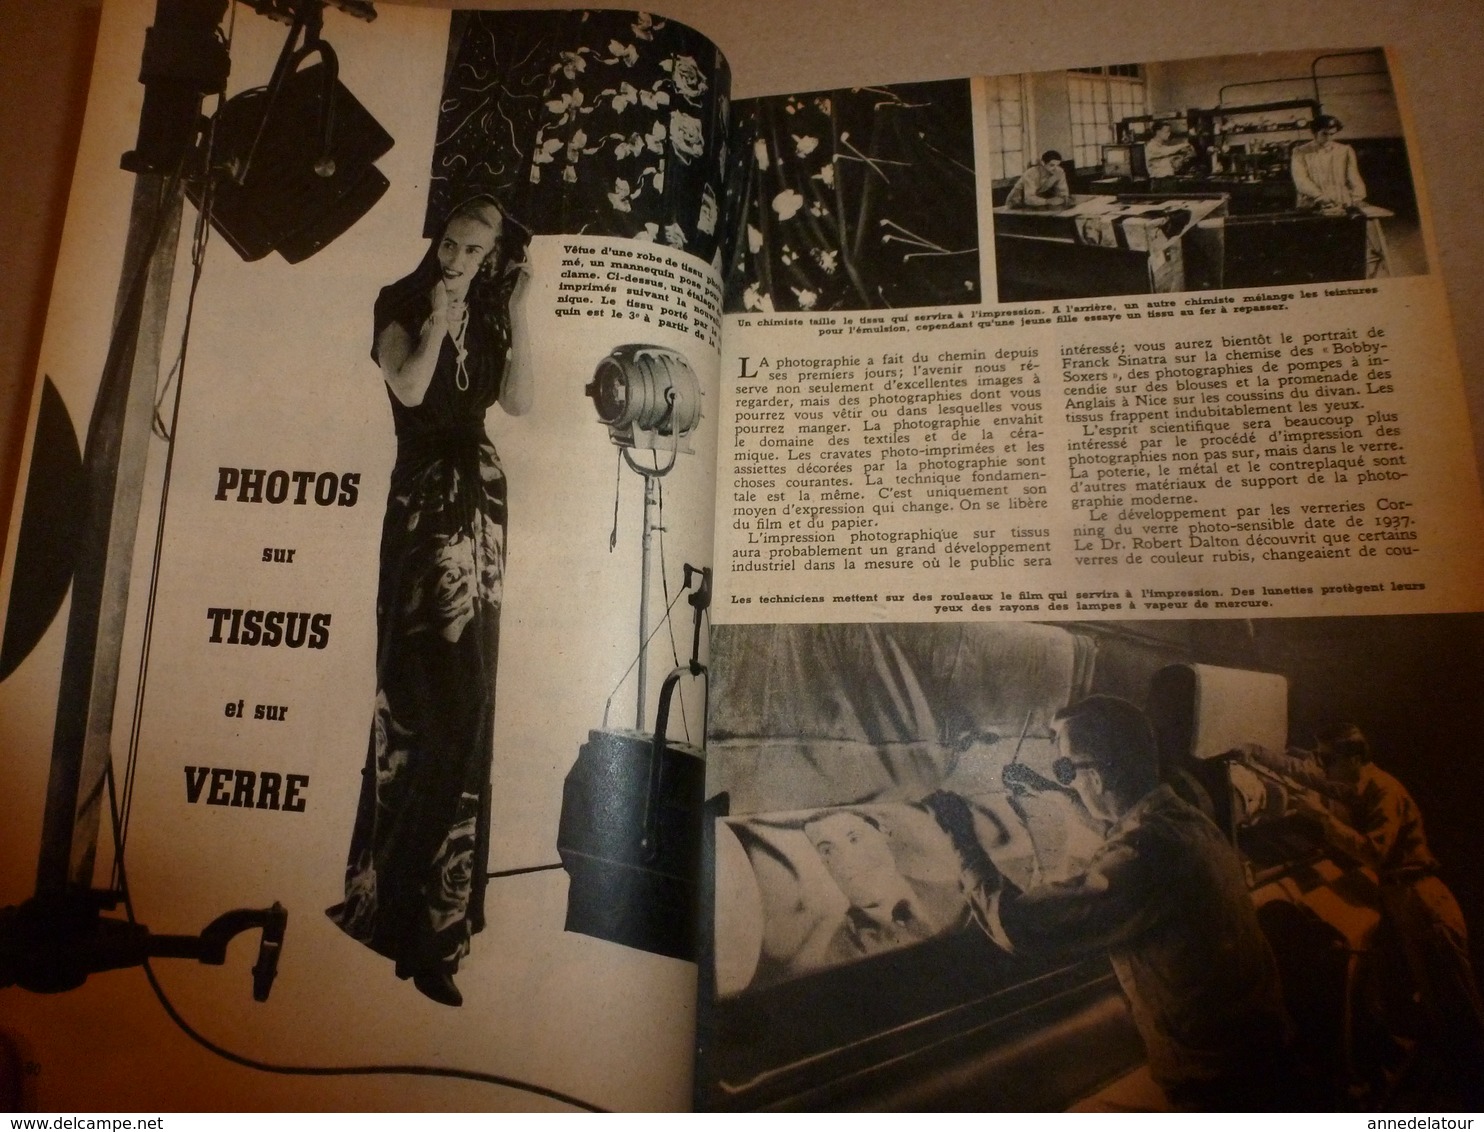 1948 MÉCANIQUE POPULAIRE: Prestidigitation ; Photos sur tissus et sur verre; Pêche aux requins; etc